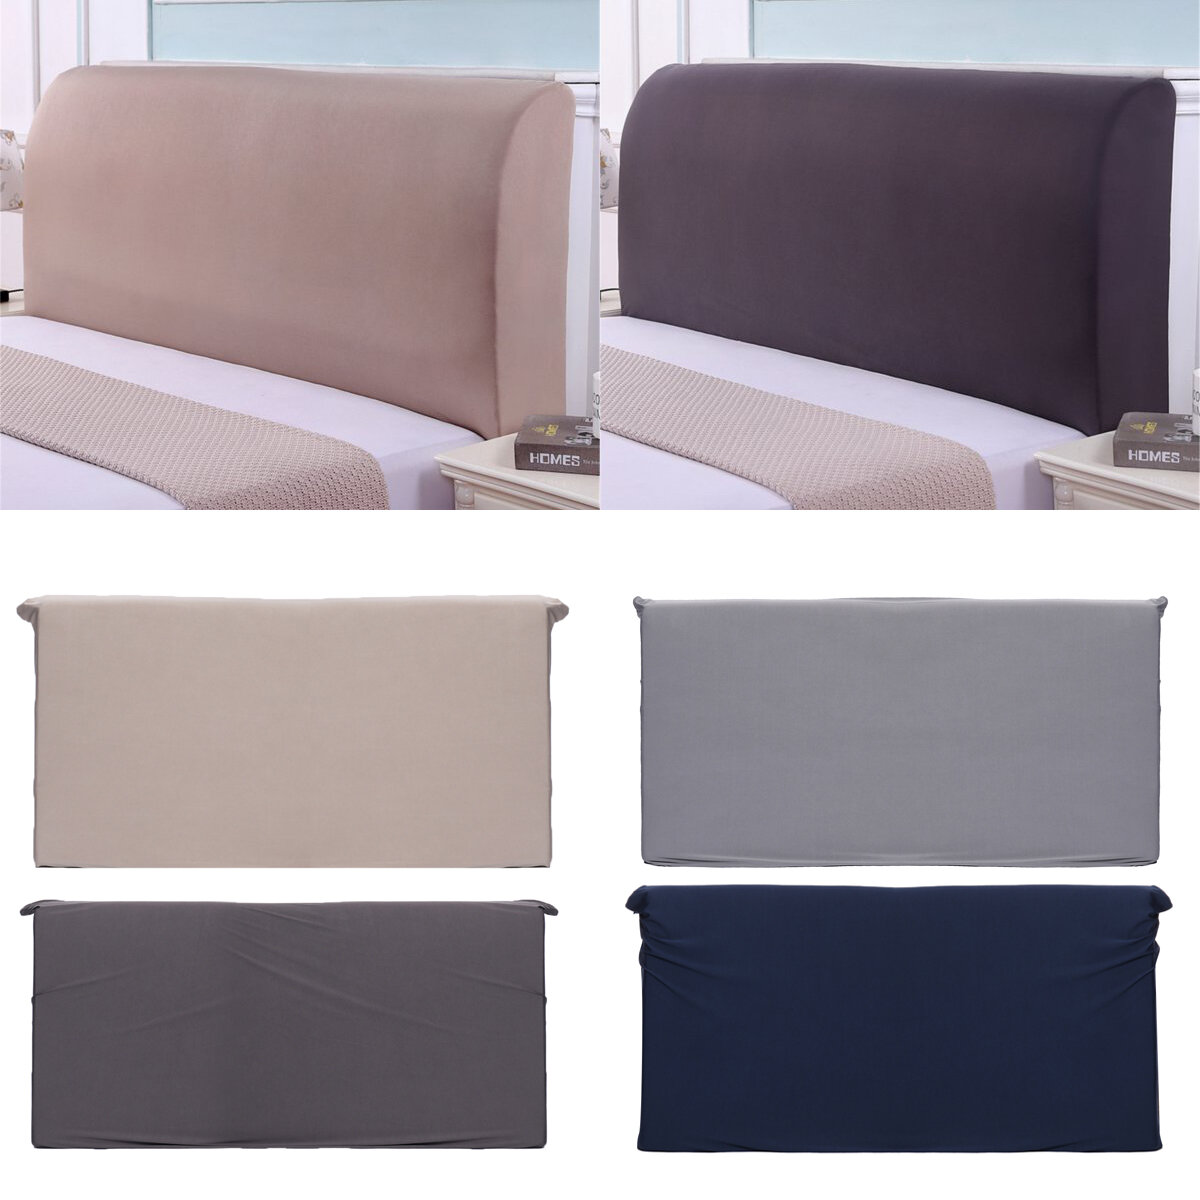 Housse de protection complète en polyester élastique pour tête de lit de 150 cm, protège contre la poussière, couvre-lit de protection pour lit